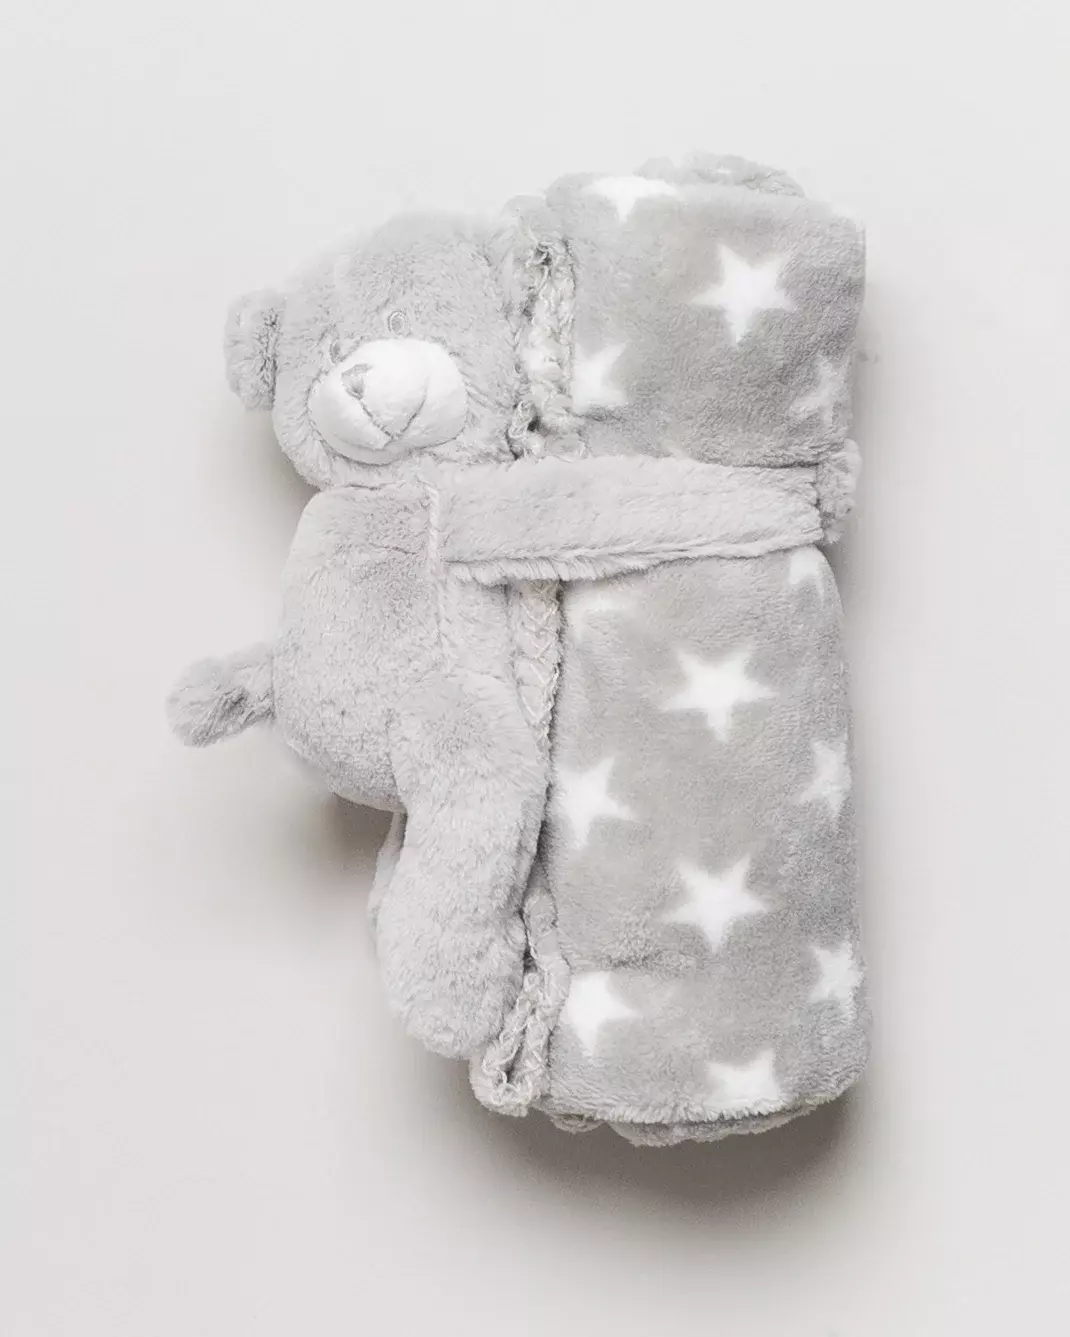 NEU Kuscheldecke mit Bär 75x75 cm – grau, flauschig, Sterne, Babydecke